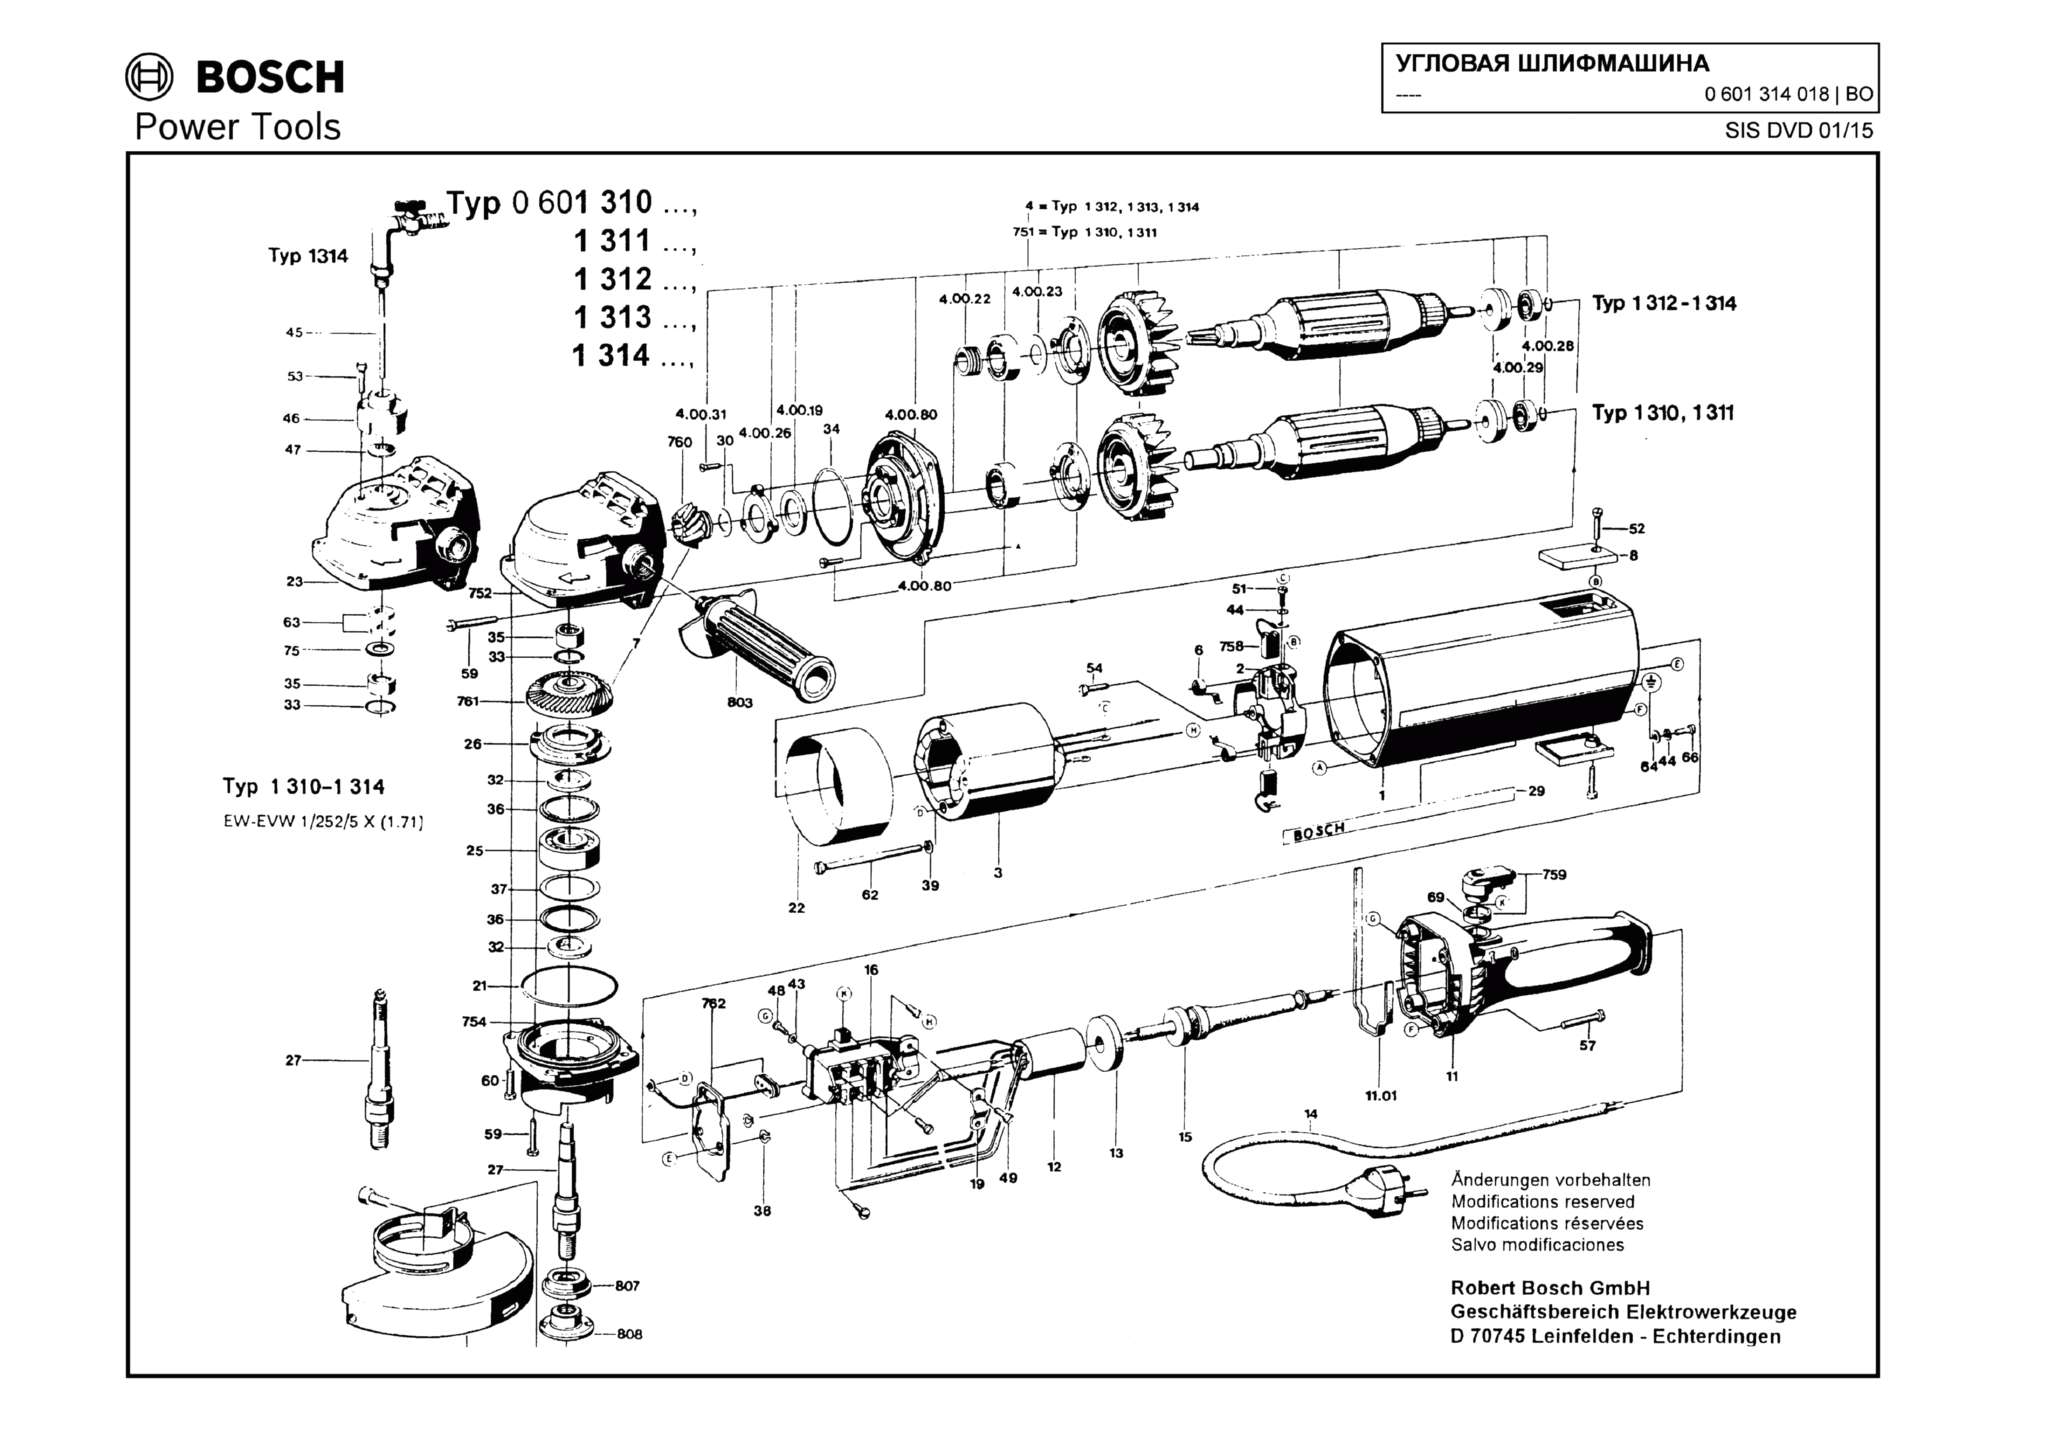 Запчасти, схема и деталировка Bosch (ТИП 0601314018)